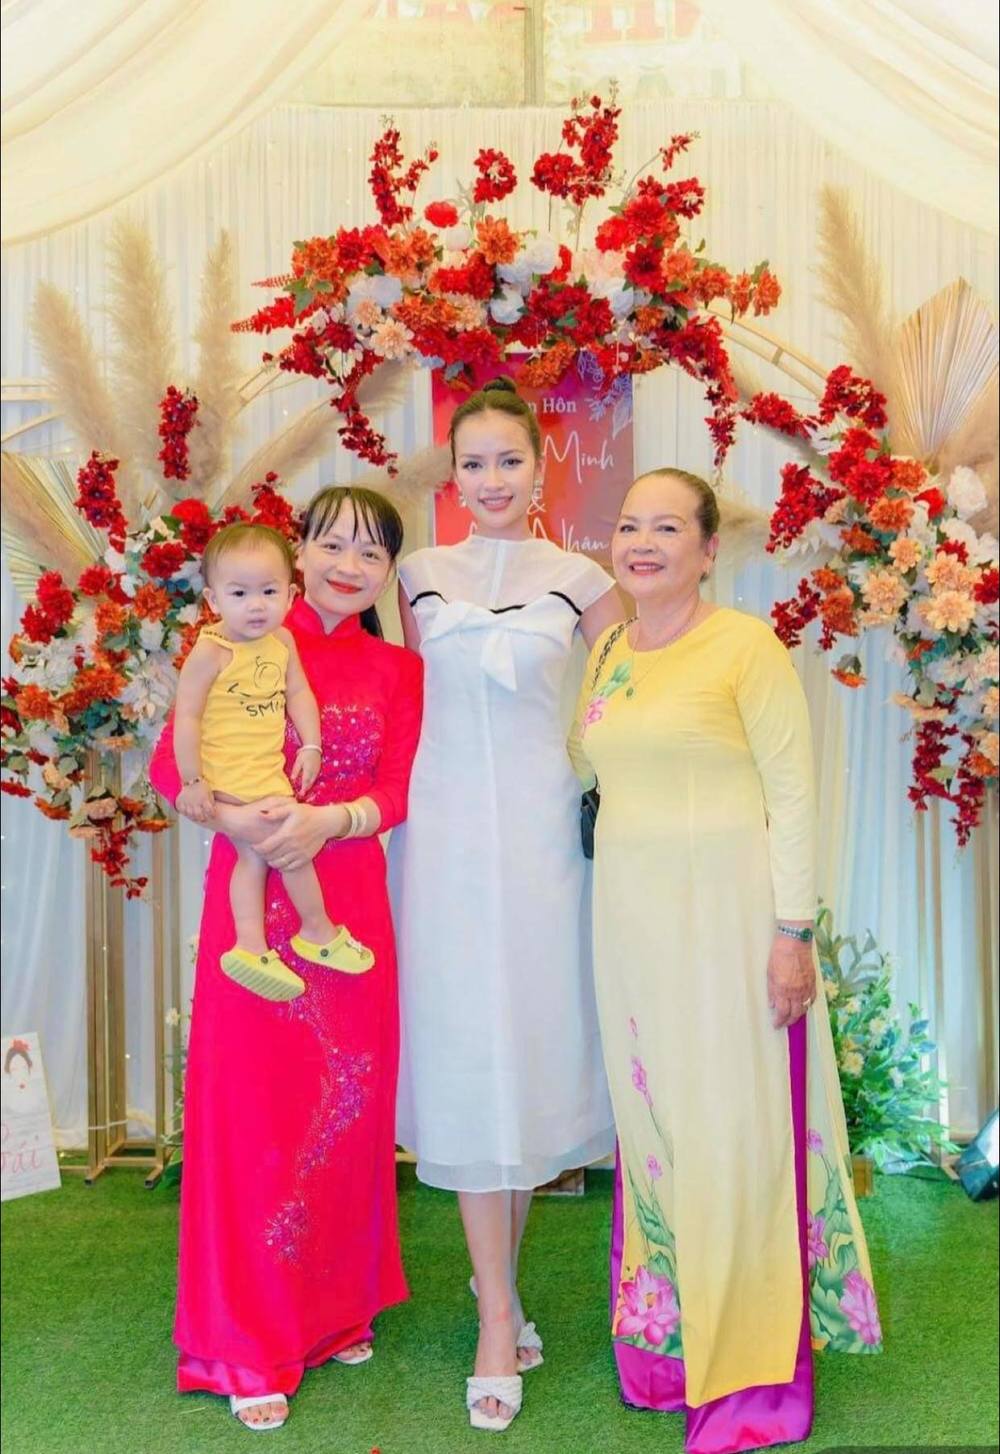  
Ngọc Châu xuất hiện rạng rỡ bên cạnh mẹ ruột và chị gái khi đi đám cưới. (Ảnh: FB N.K.N) - Tin sao Viet - Tin tuc sao Viet - Scandal sao Viet - Tin tuc cua Sao - Tin cua Sao